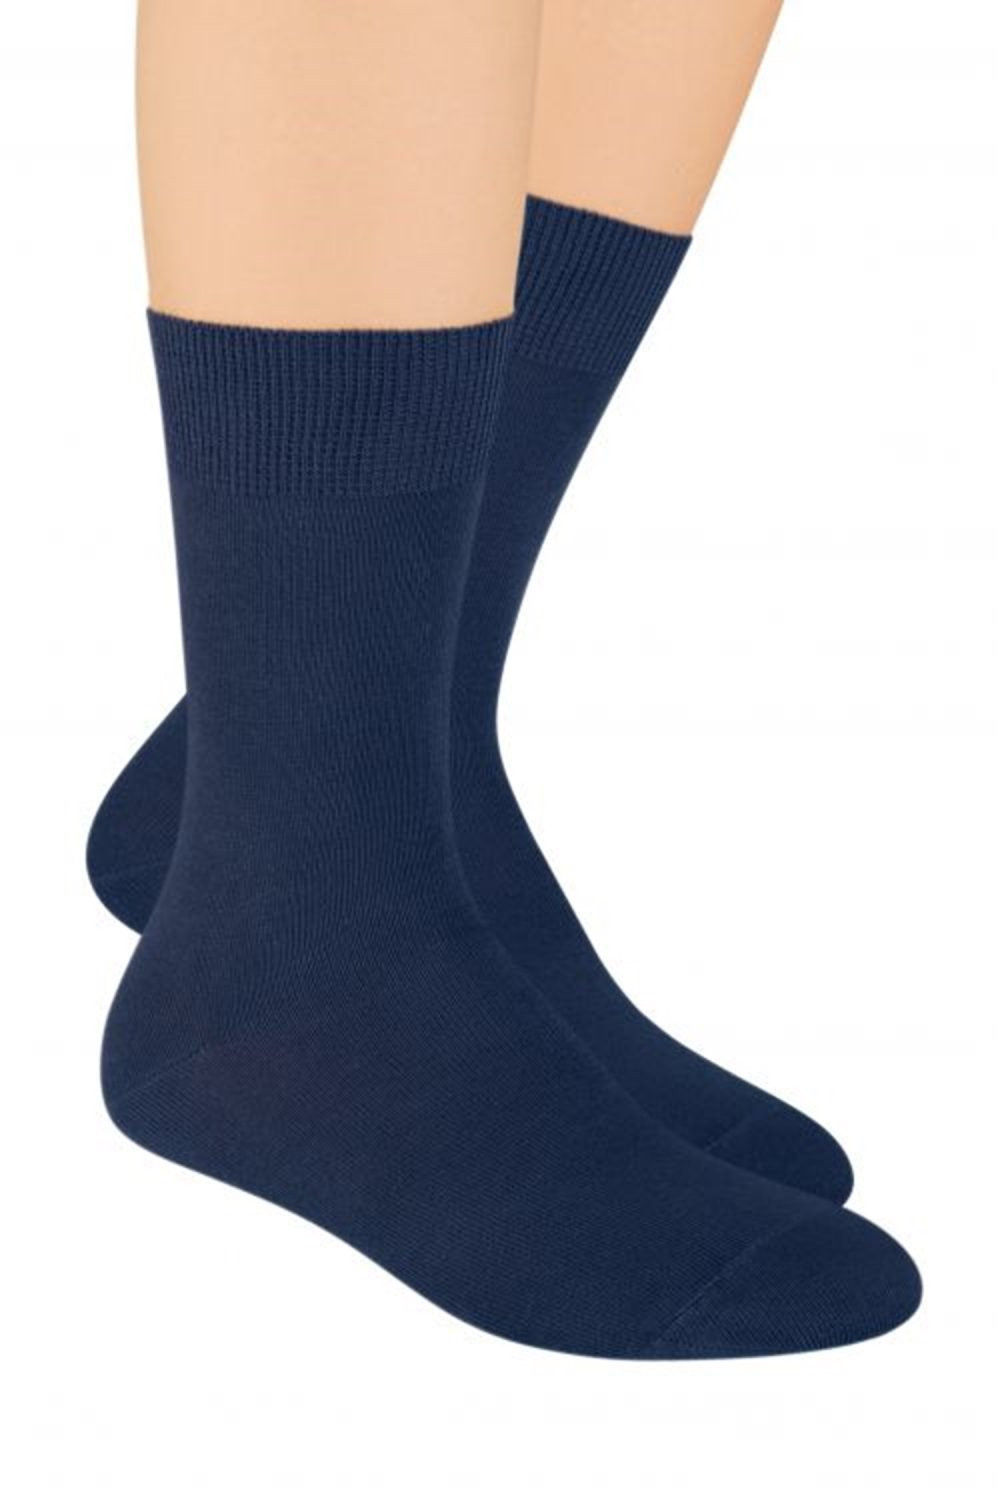 Pánské ponožky 048 tmavě modré - Steven 44-46 tmavě hnědá